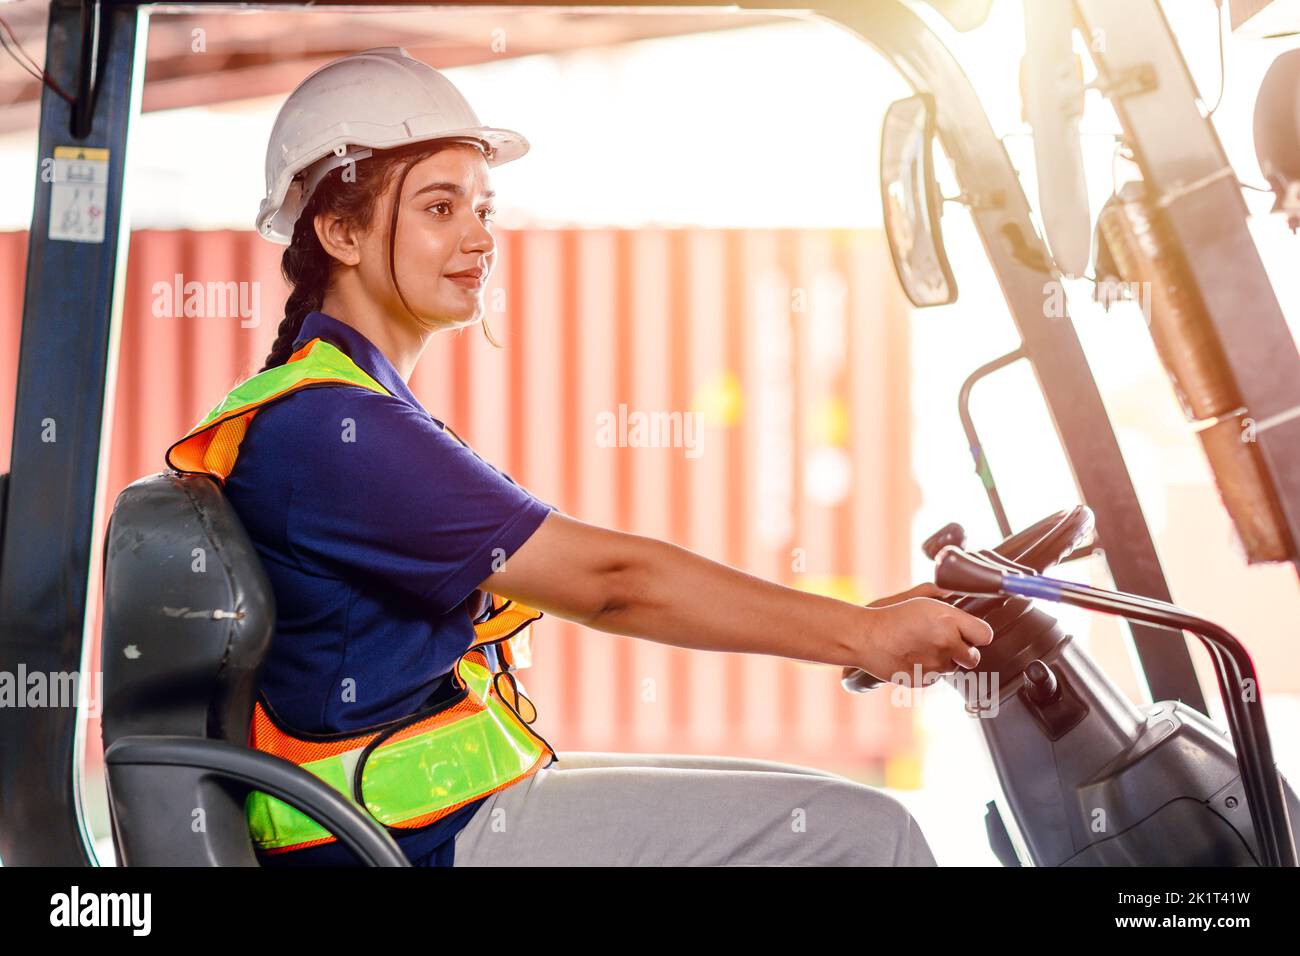 operario de carretilla elevadora que trabaja en un almacén. Retrato de una joven conductora india sentada en una carretilla elevadora y sonriendo trabajando en un gran almacén Foto de stock